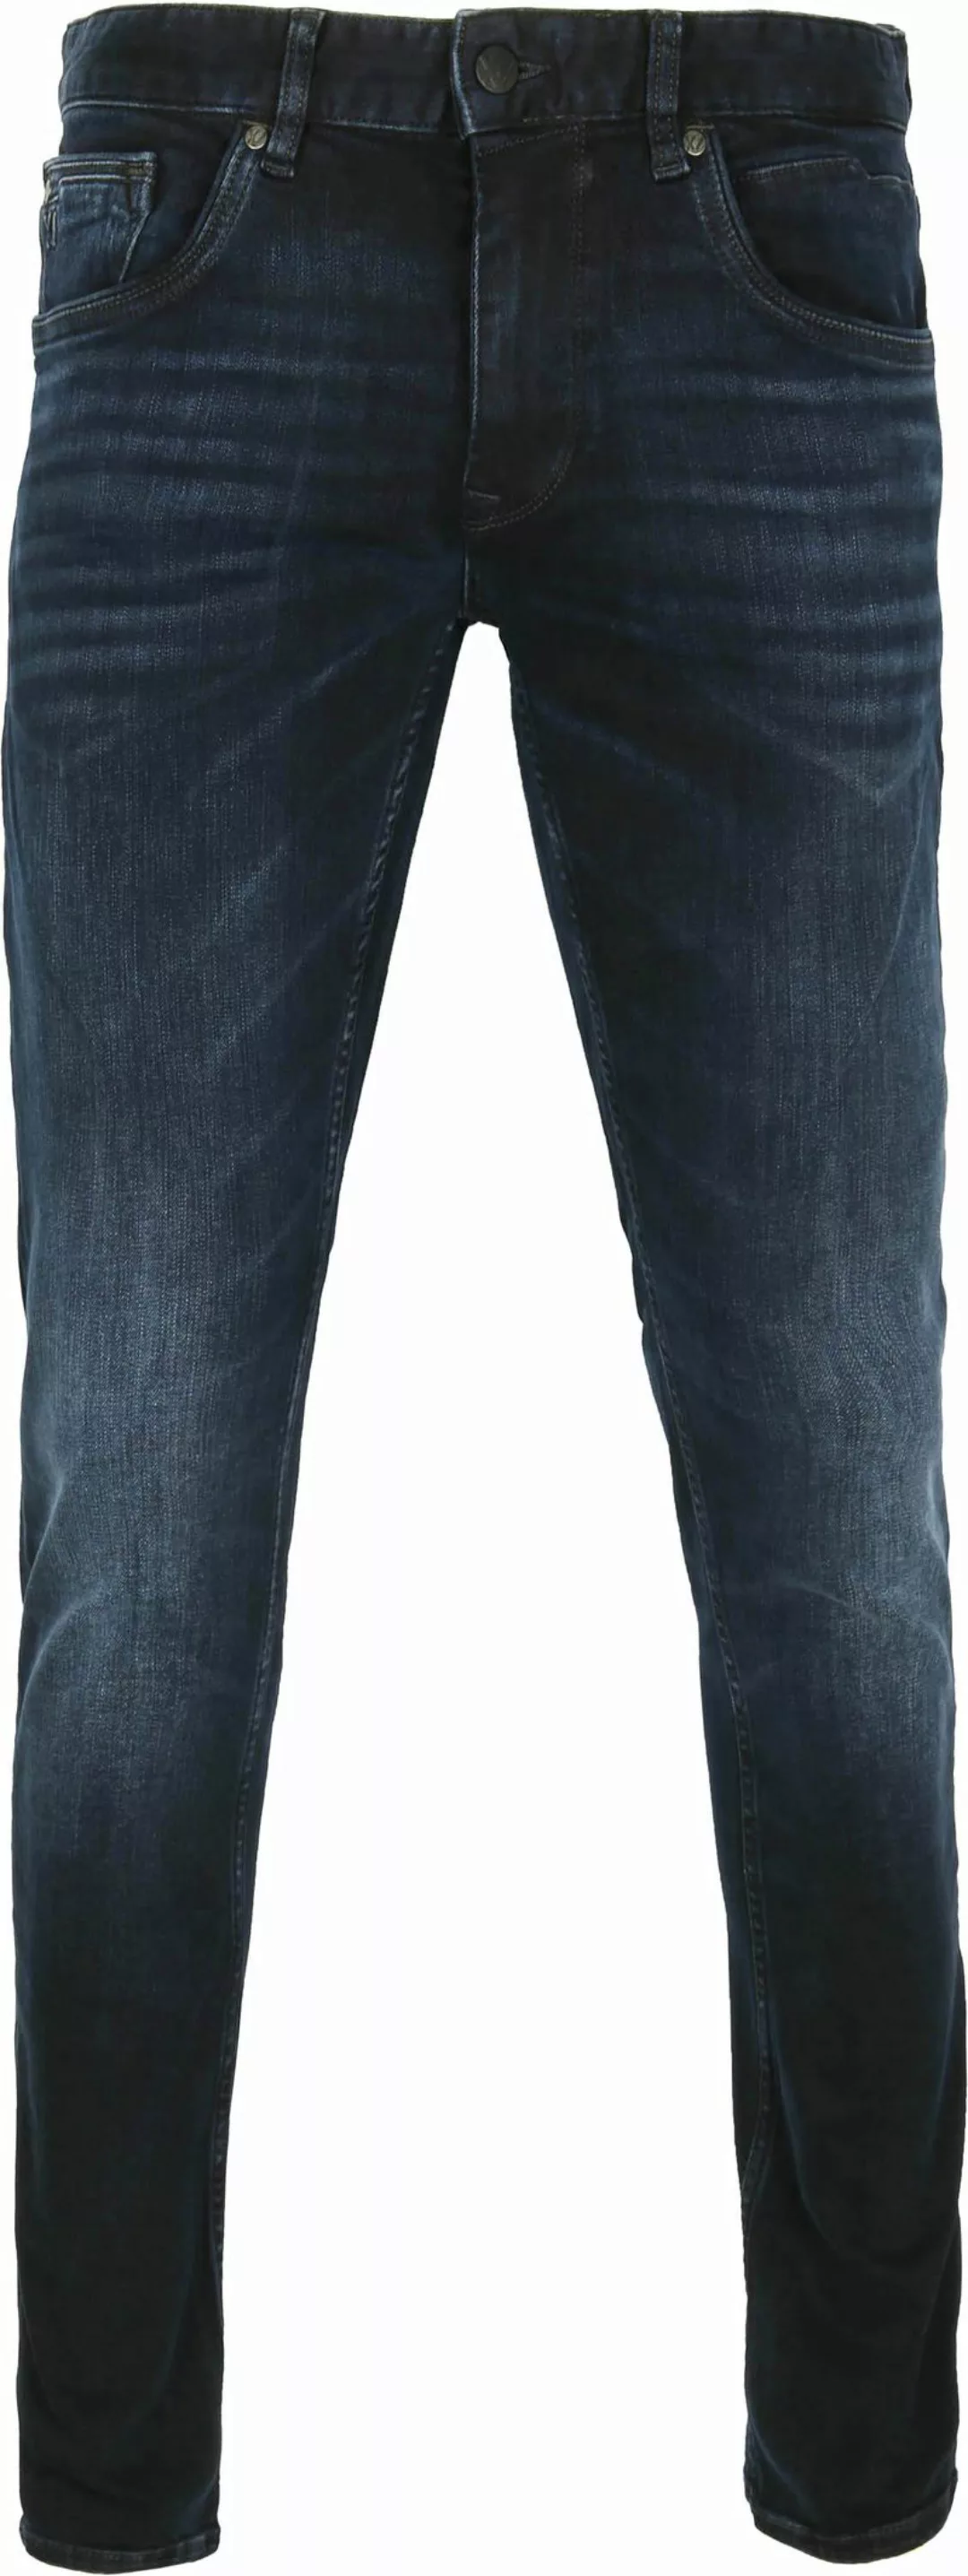 PME Legend XV Jeans Blue Black PTR150 - Größe W 36 - L 30 günstig online kaufen